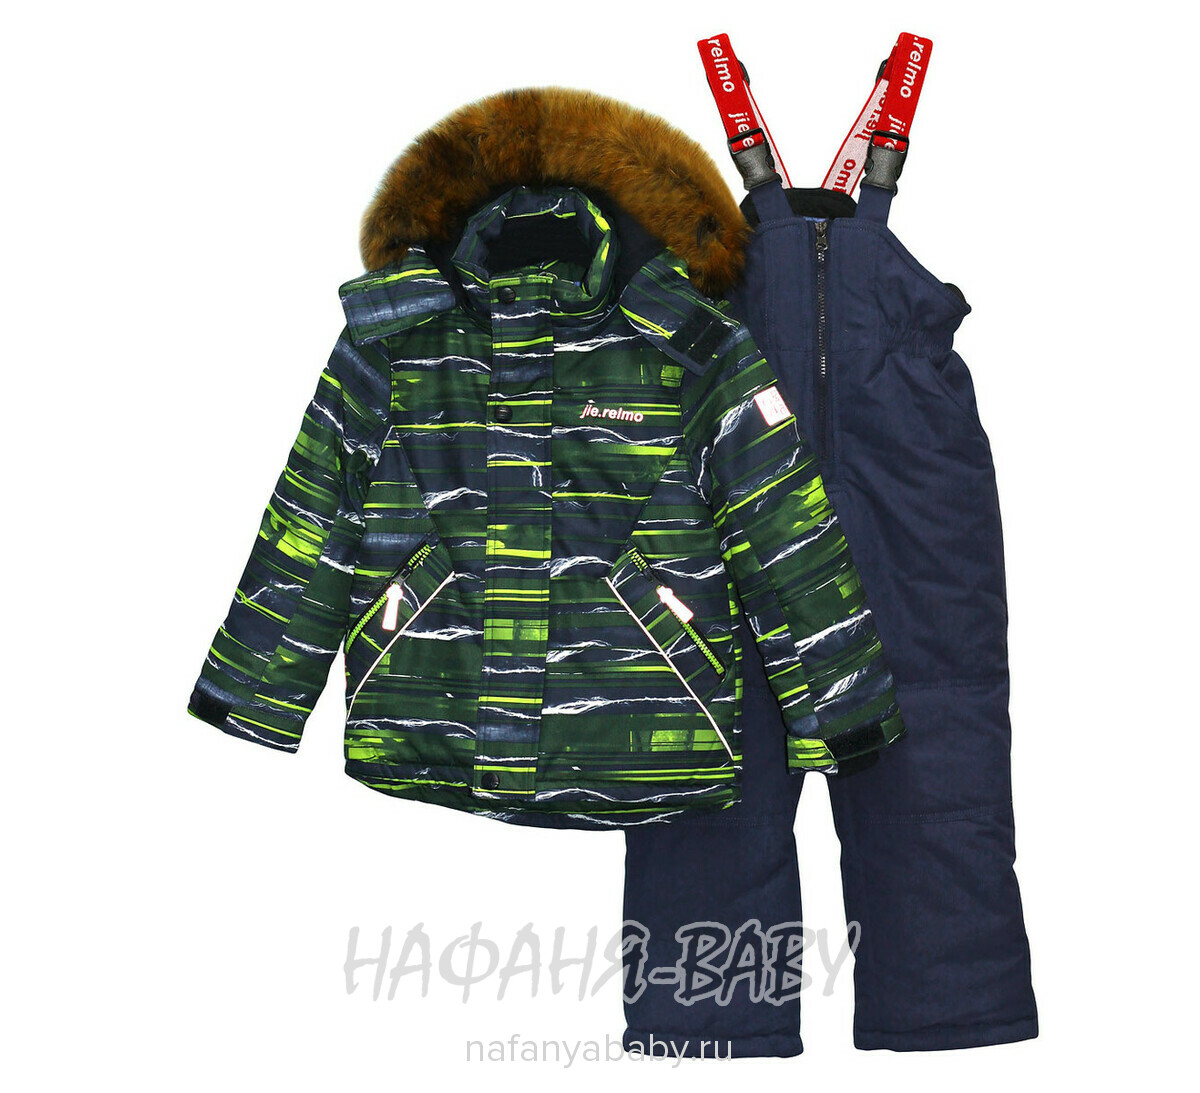 Детский зимний костюм Jie Relmo, купить в интернет магазине Нафаня. арт: 816.